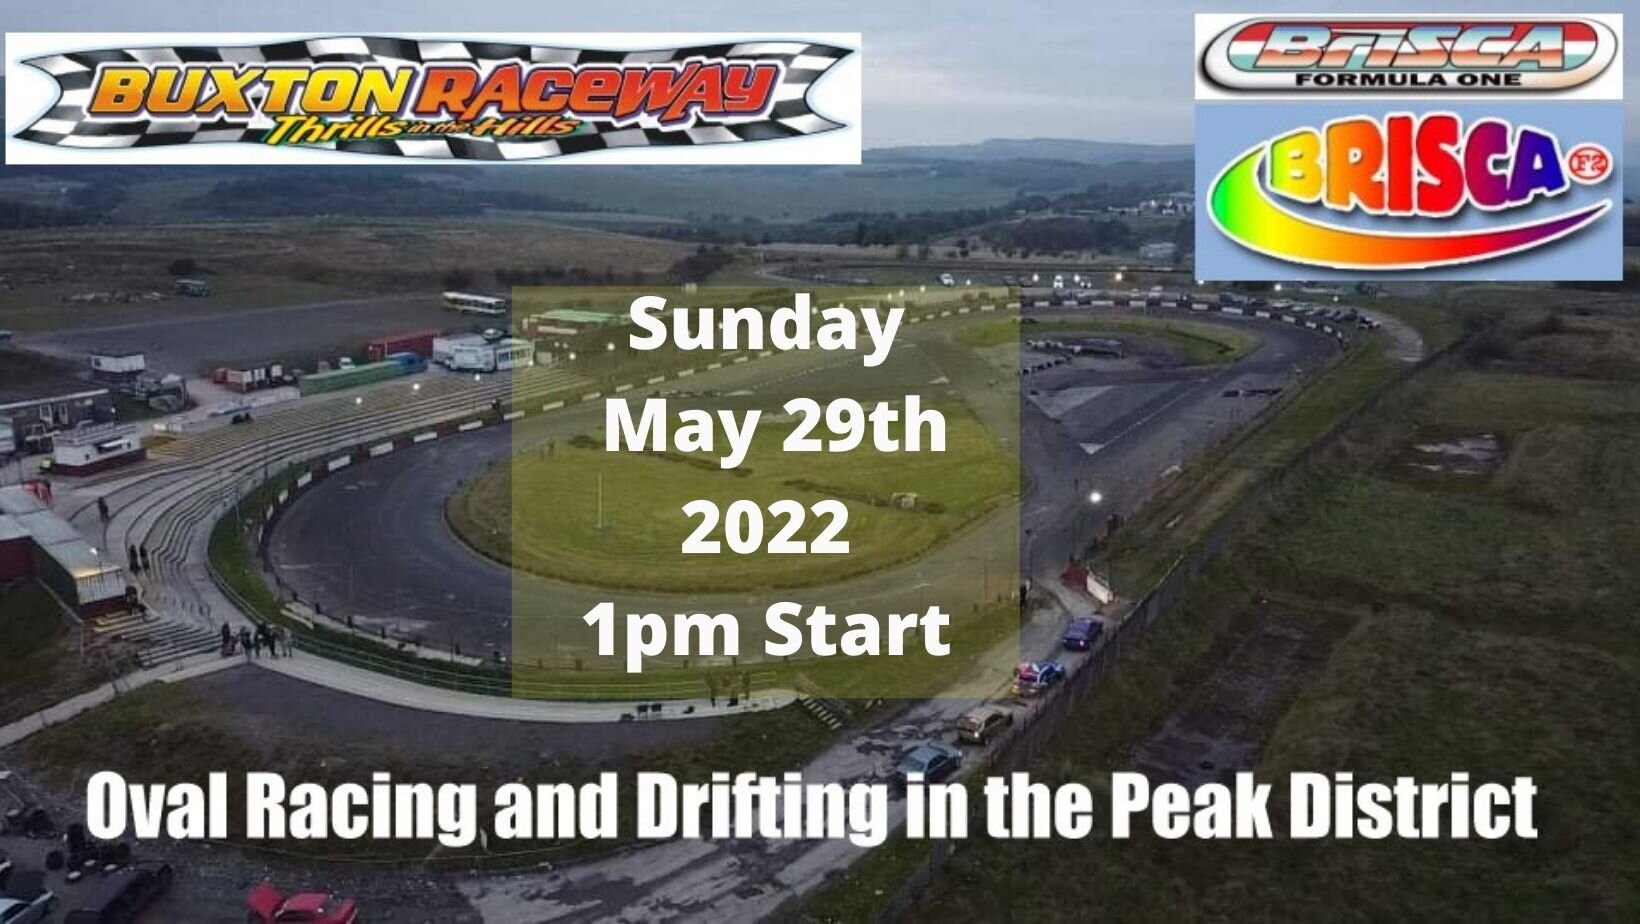 Buxton Raceway | Sunday 29th May 1pm